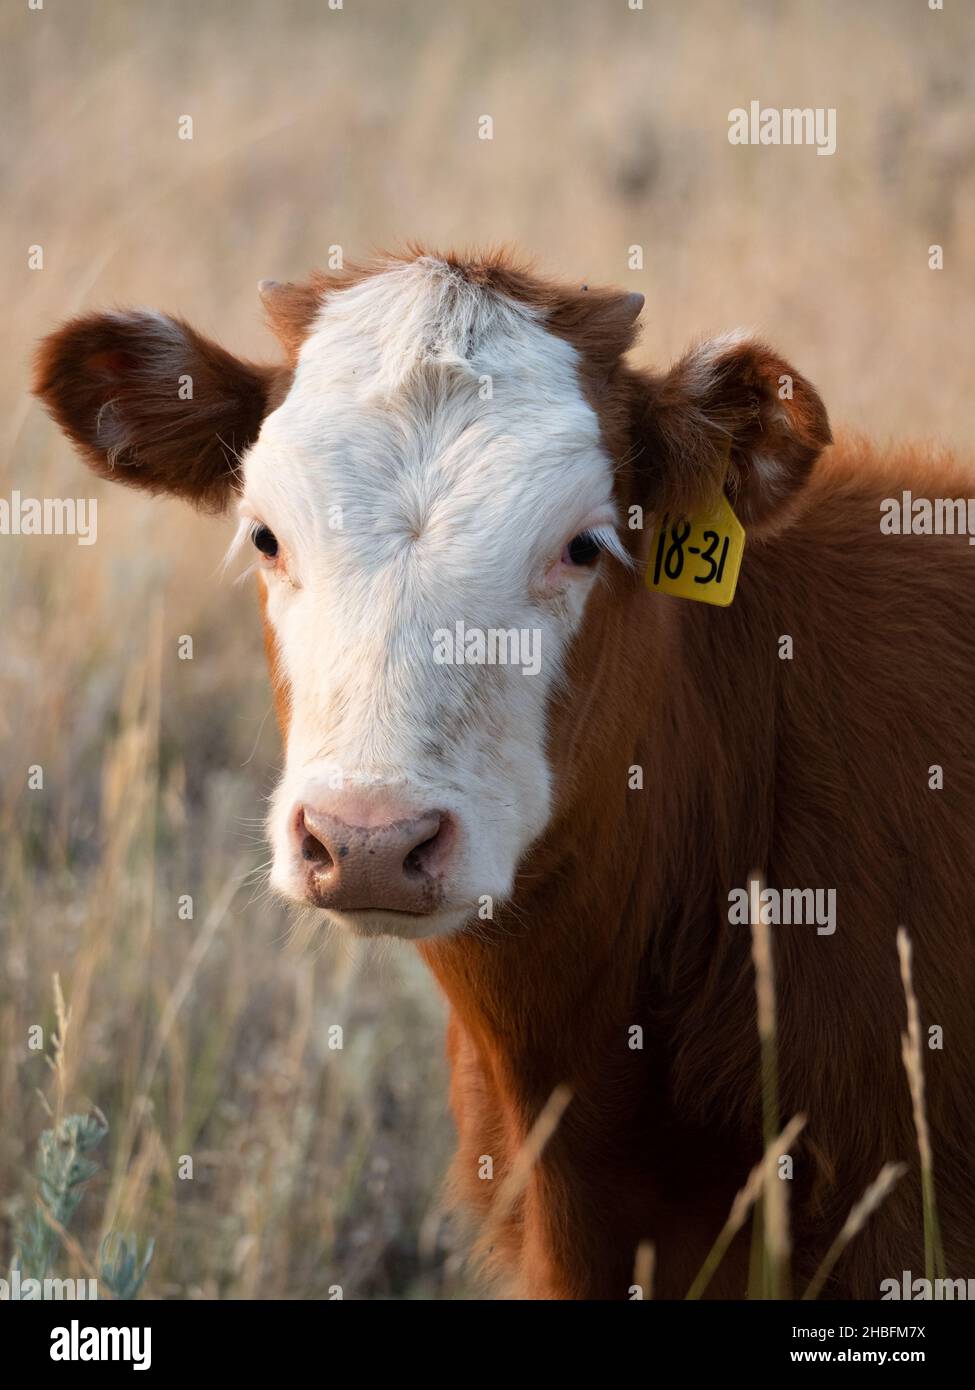 Gros plan d'une vache Simental à fourrure brun rougeâtre et visage blanc regardant un appareil photo avec de l'herbe séchée au premier plan.Photographié avec un creux peu profond Banque D'Images